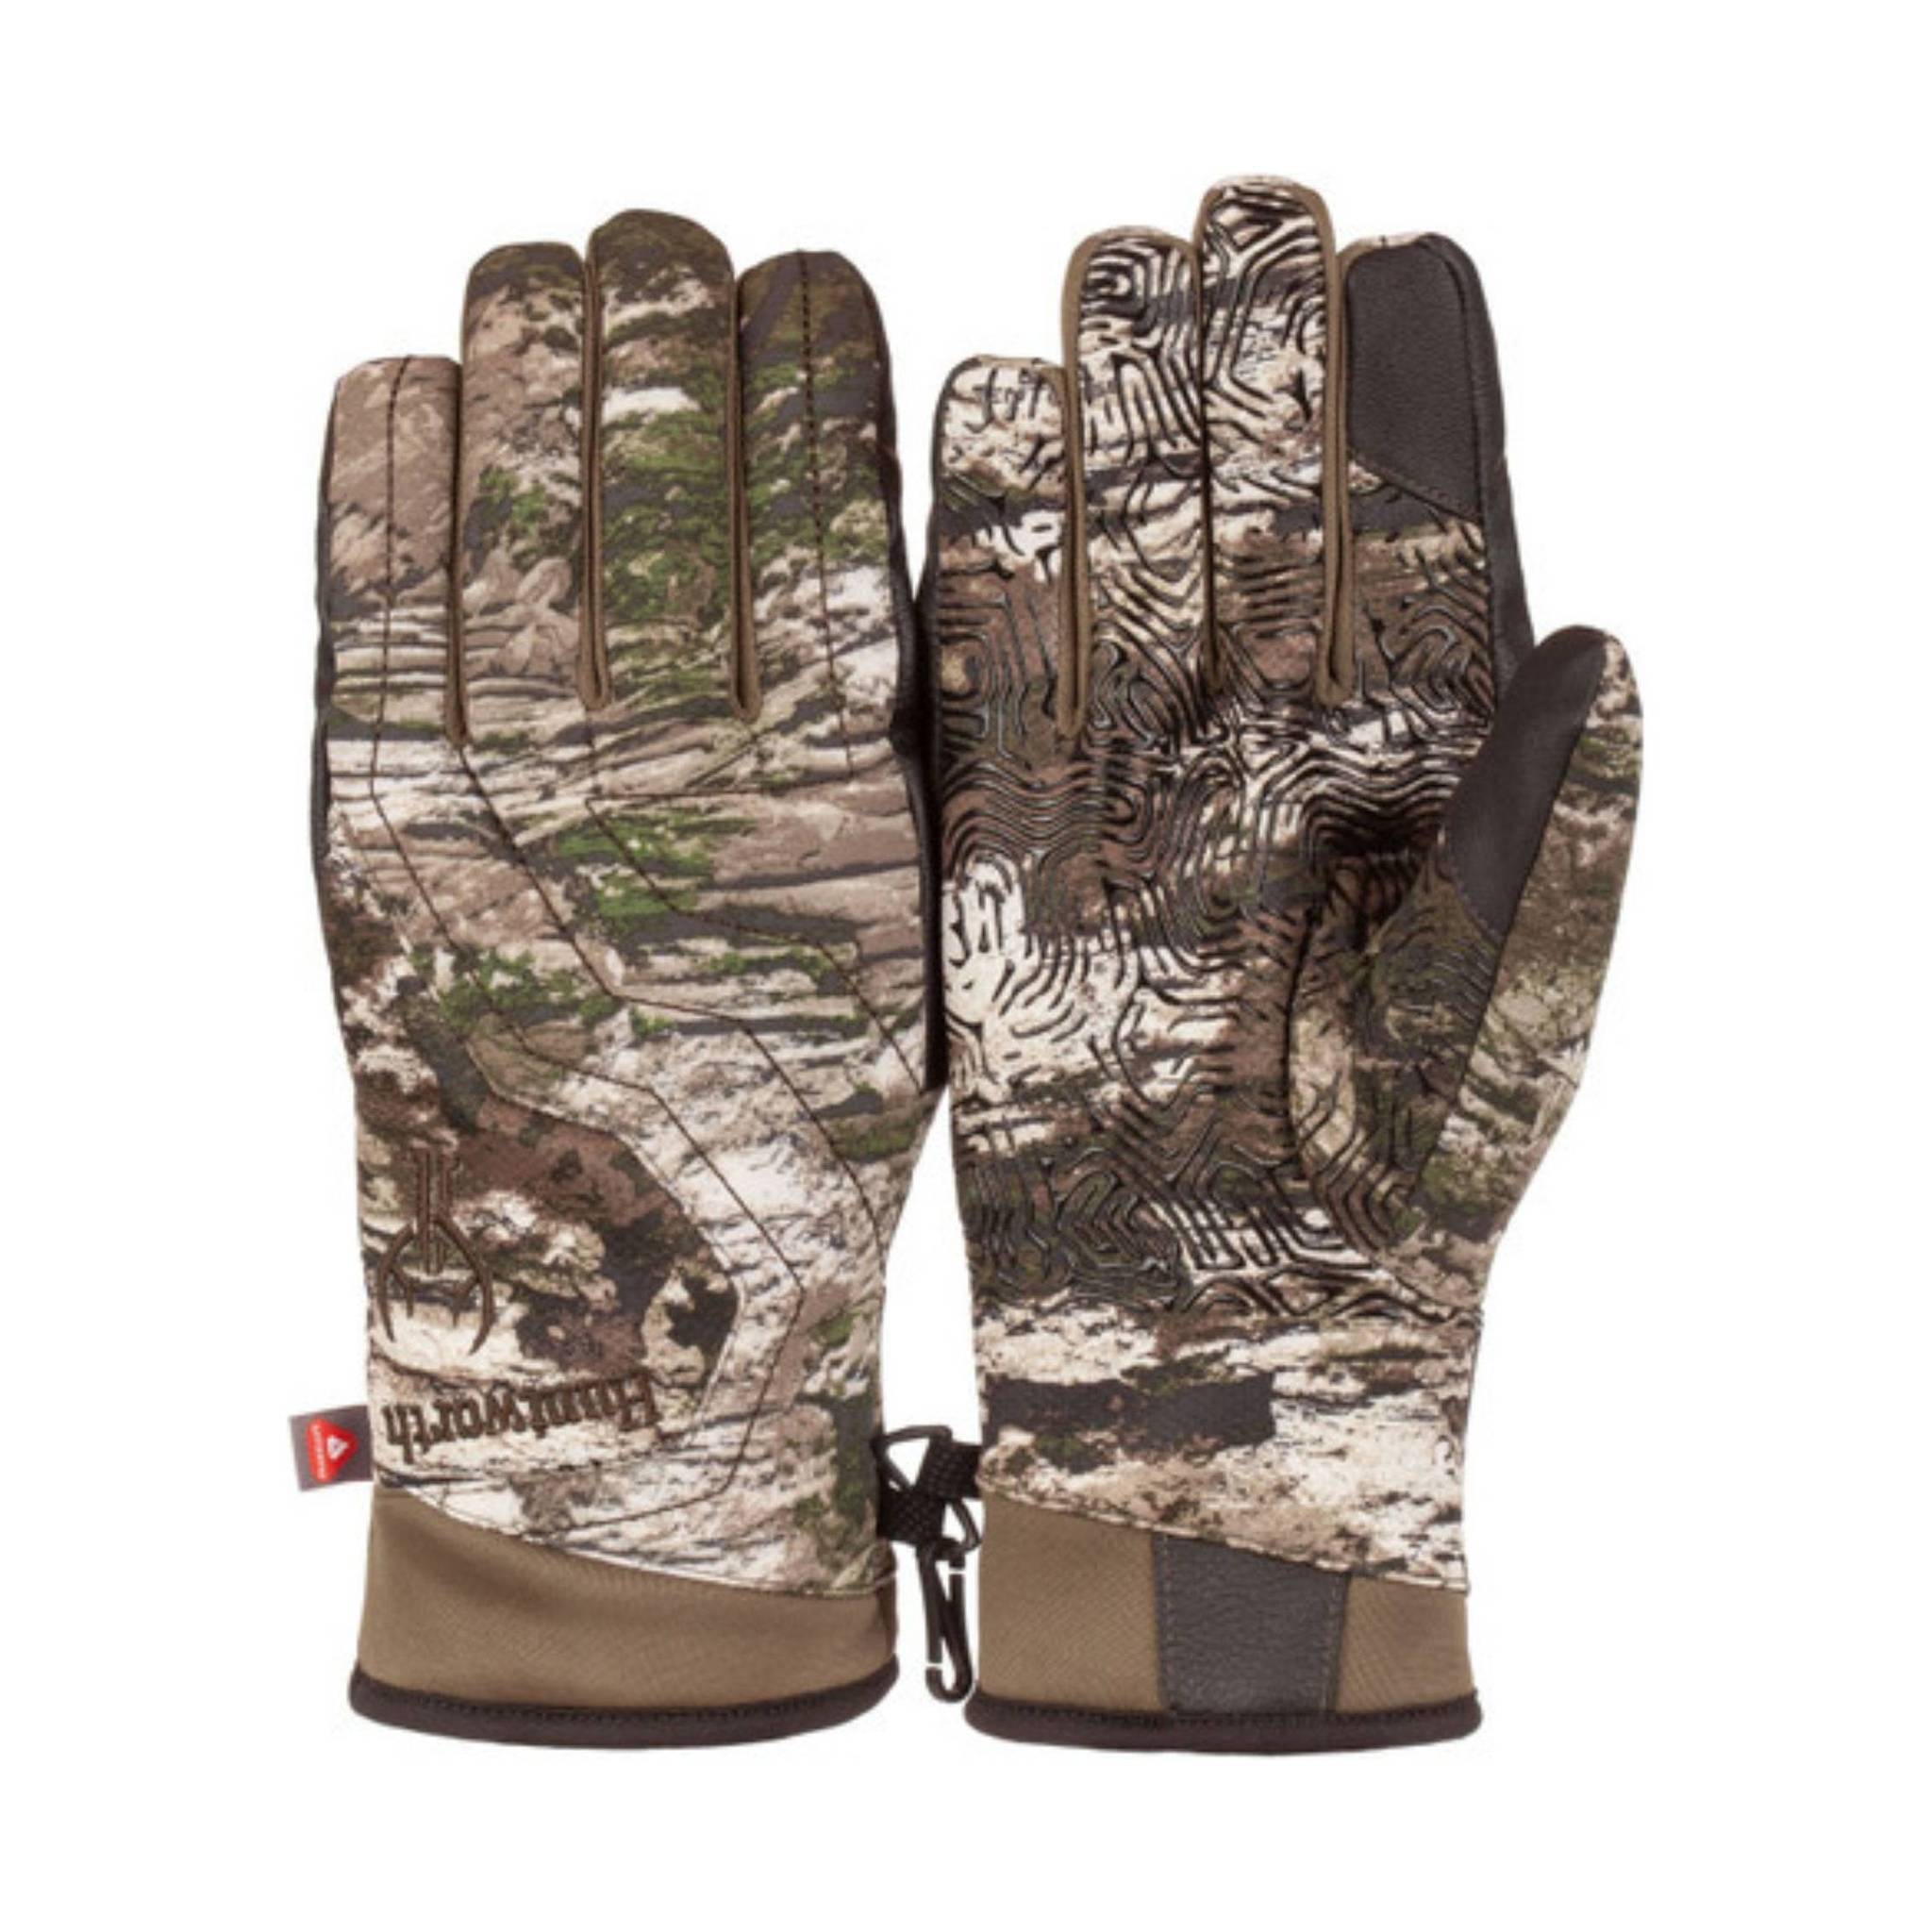 Huntworth Men's Anchorage Insulated Waterproof Gloves, Medium, Tarnen